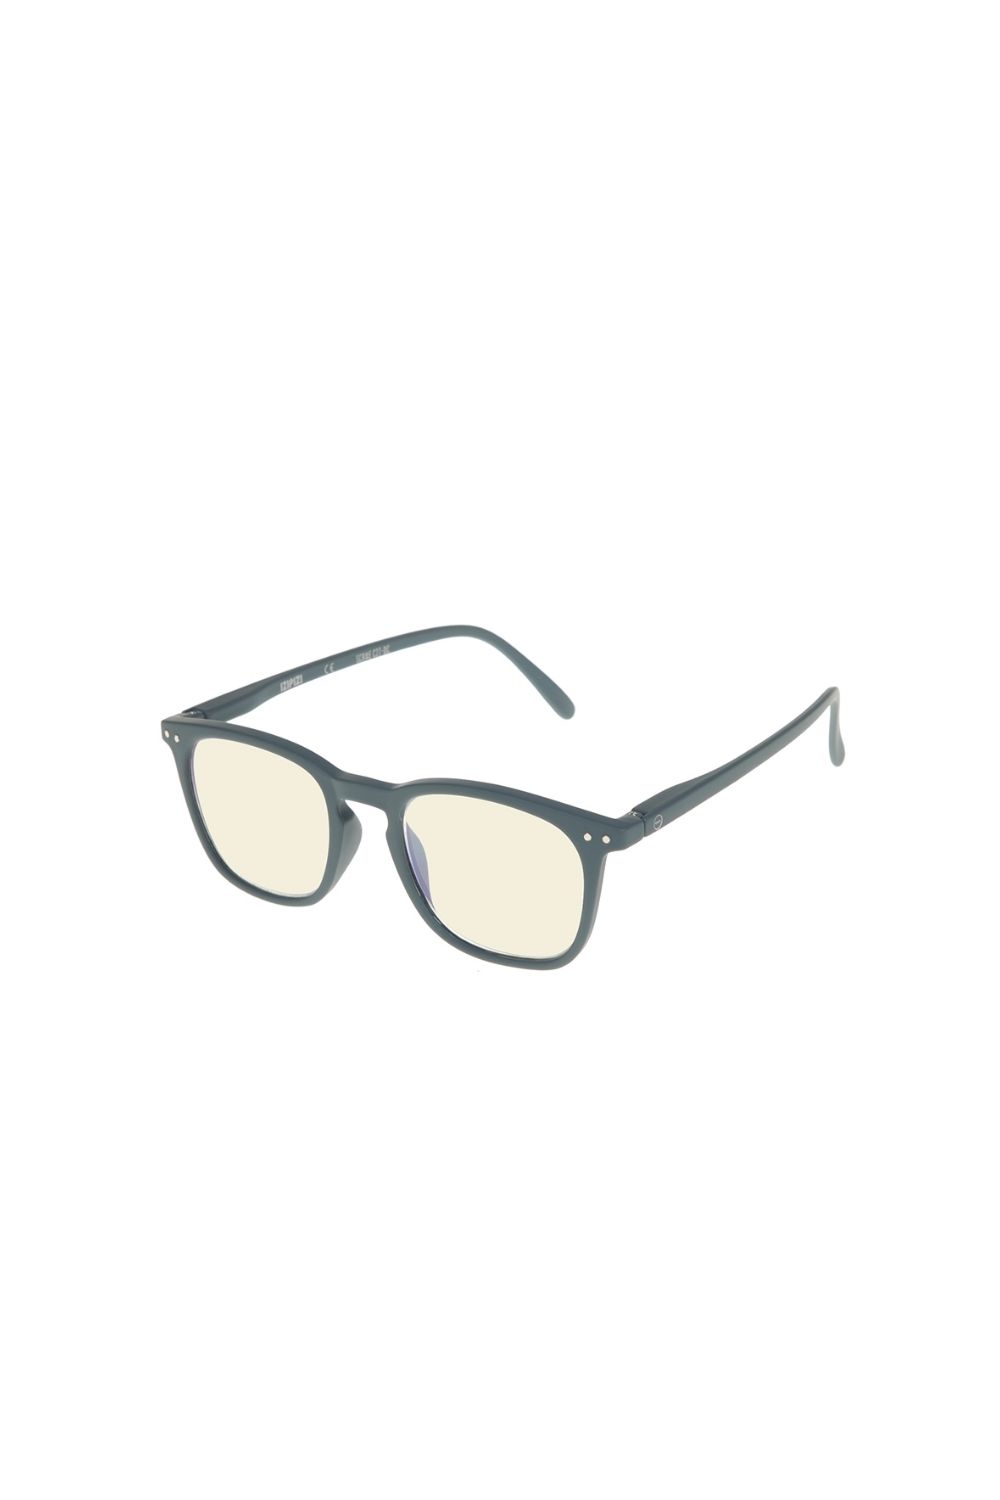 Γυναικεία/Αξεσουάρ/Γυαλιά/Οράσεως IZIPIZI - Unisex γυαλιά οράσεως IZIPIZI γκρι